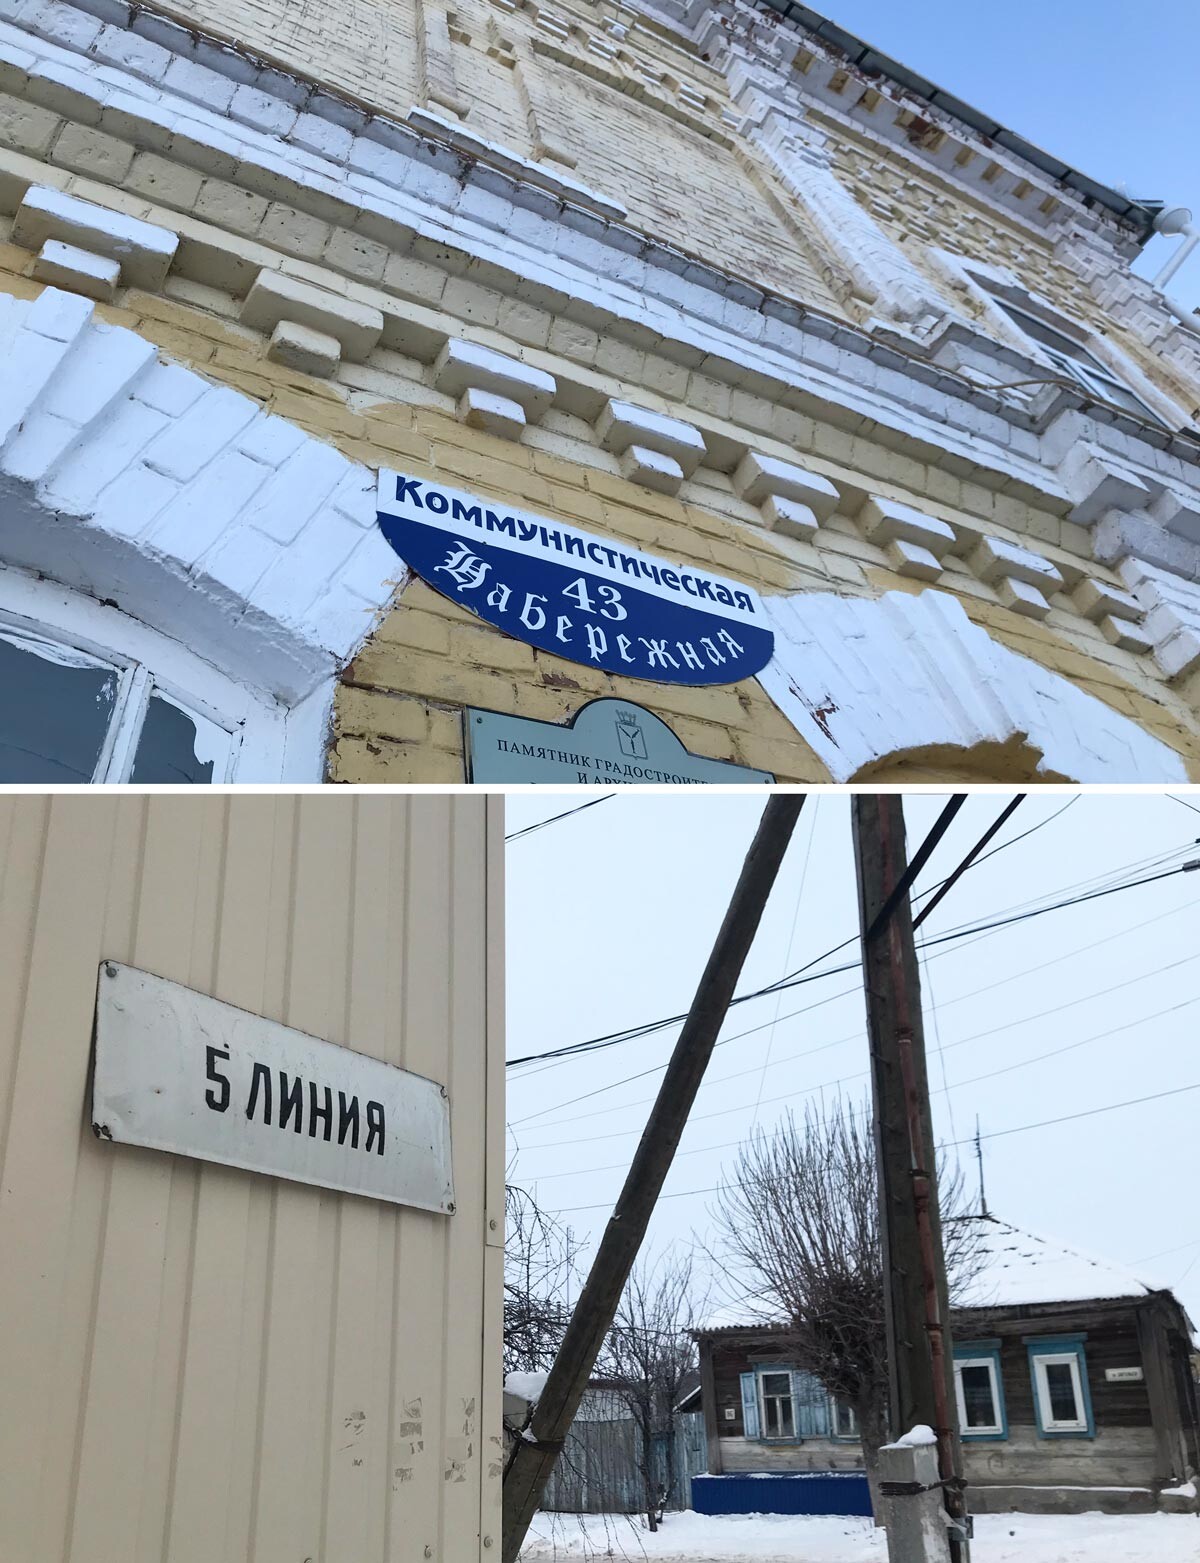 A Marx, i nomi di alcune strade sono scritti in cirillico con un font gotico